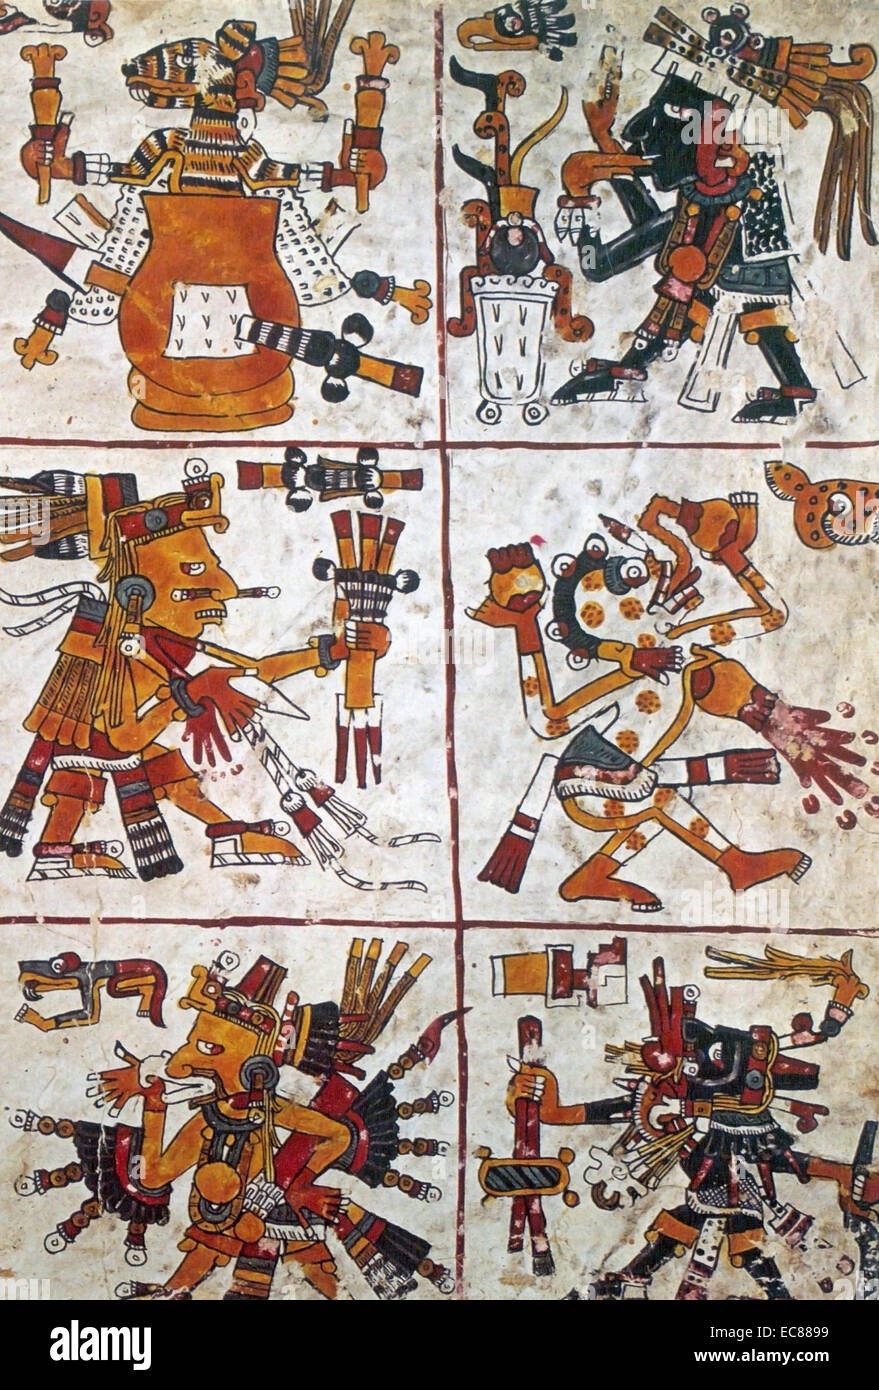 Codex Borgia (Codex Yoalli Ehecatl) Mesoamerican manoscritto, che si pensa sia stato scritto prima della conquista spagnola del Messico. Datata XVI Secolo Foto Stock